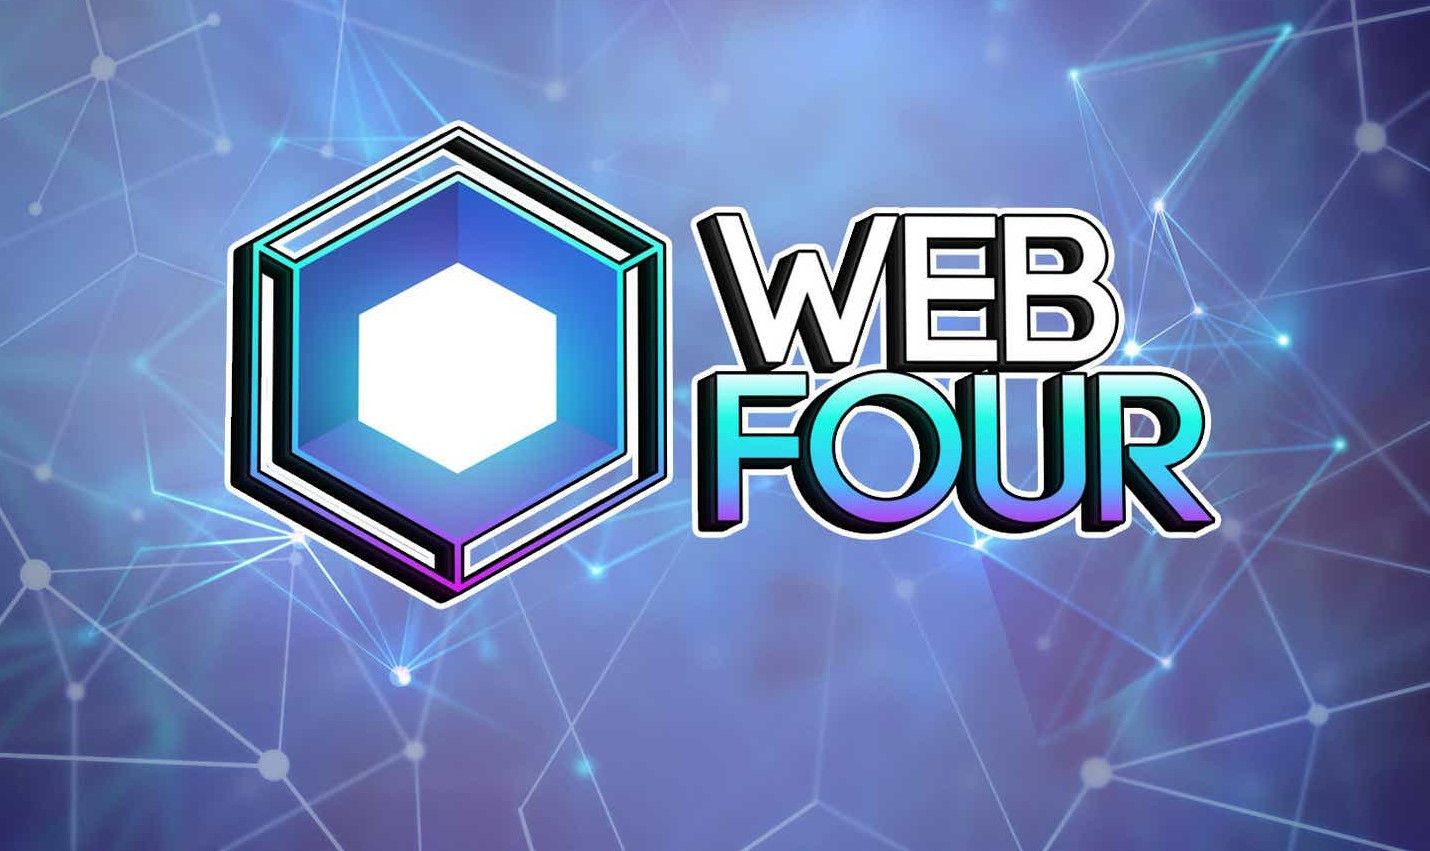 Webfour coin, Elon Musk, Jack Dorsey ilişkisi | Webfour coin nedir?